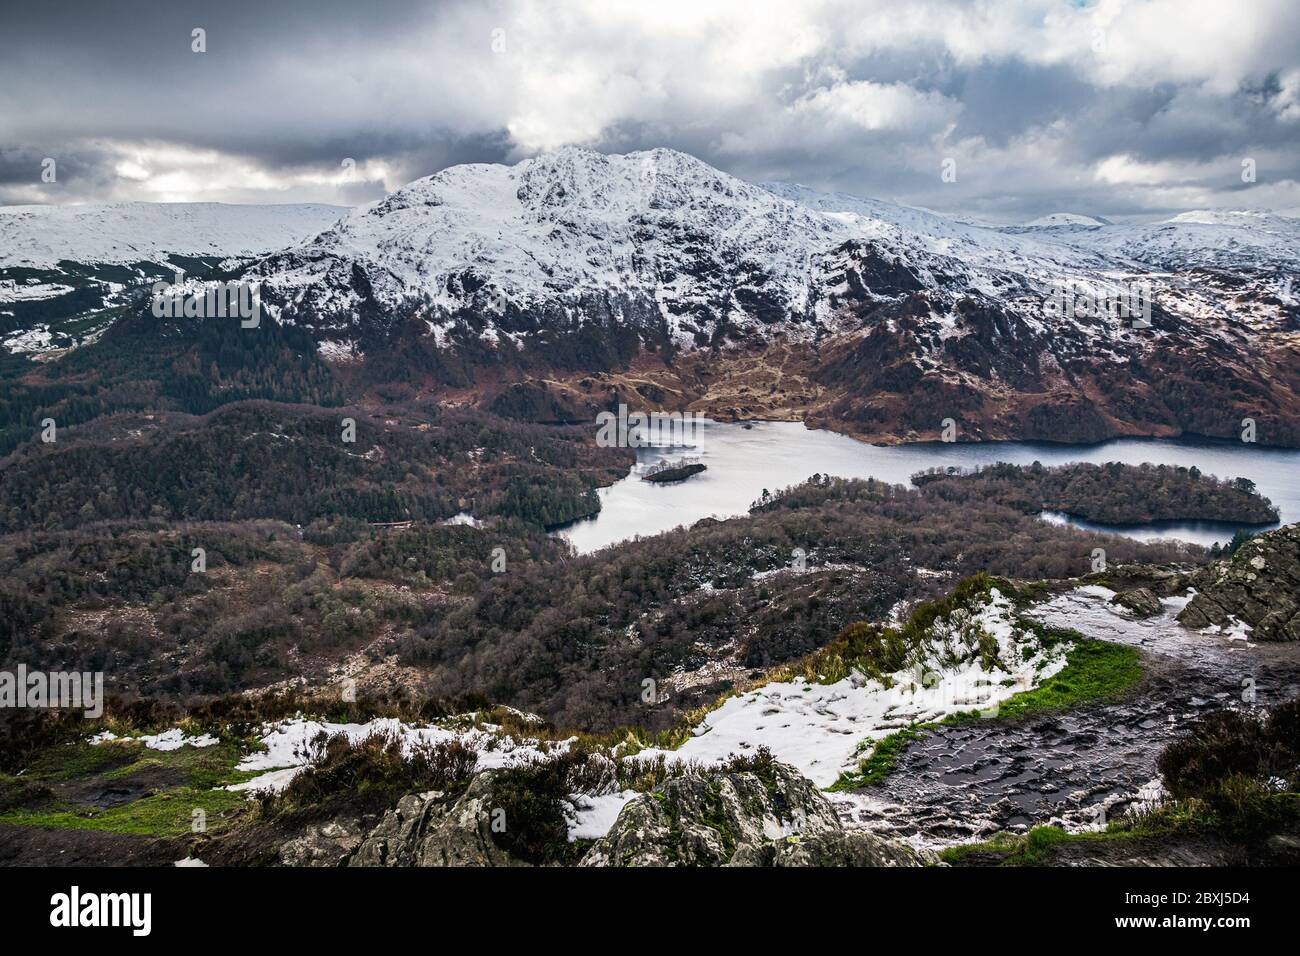 Vista de invierno escocesa desde Ben A'an con vistas al lago Katrine y el pico nevado de Ben Venue en las tierras altas de Escocia. Foto de stock